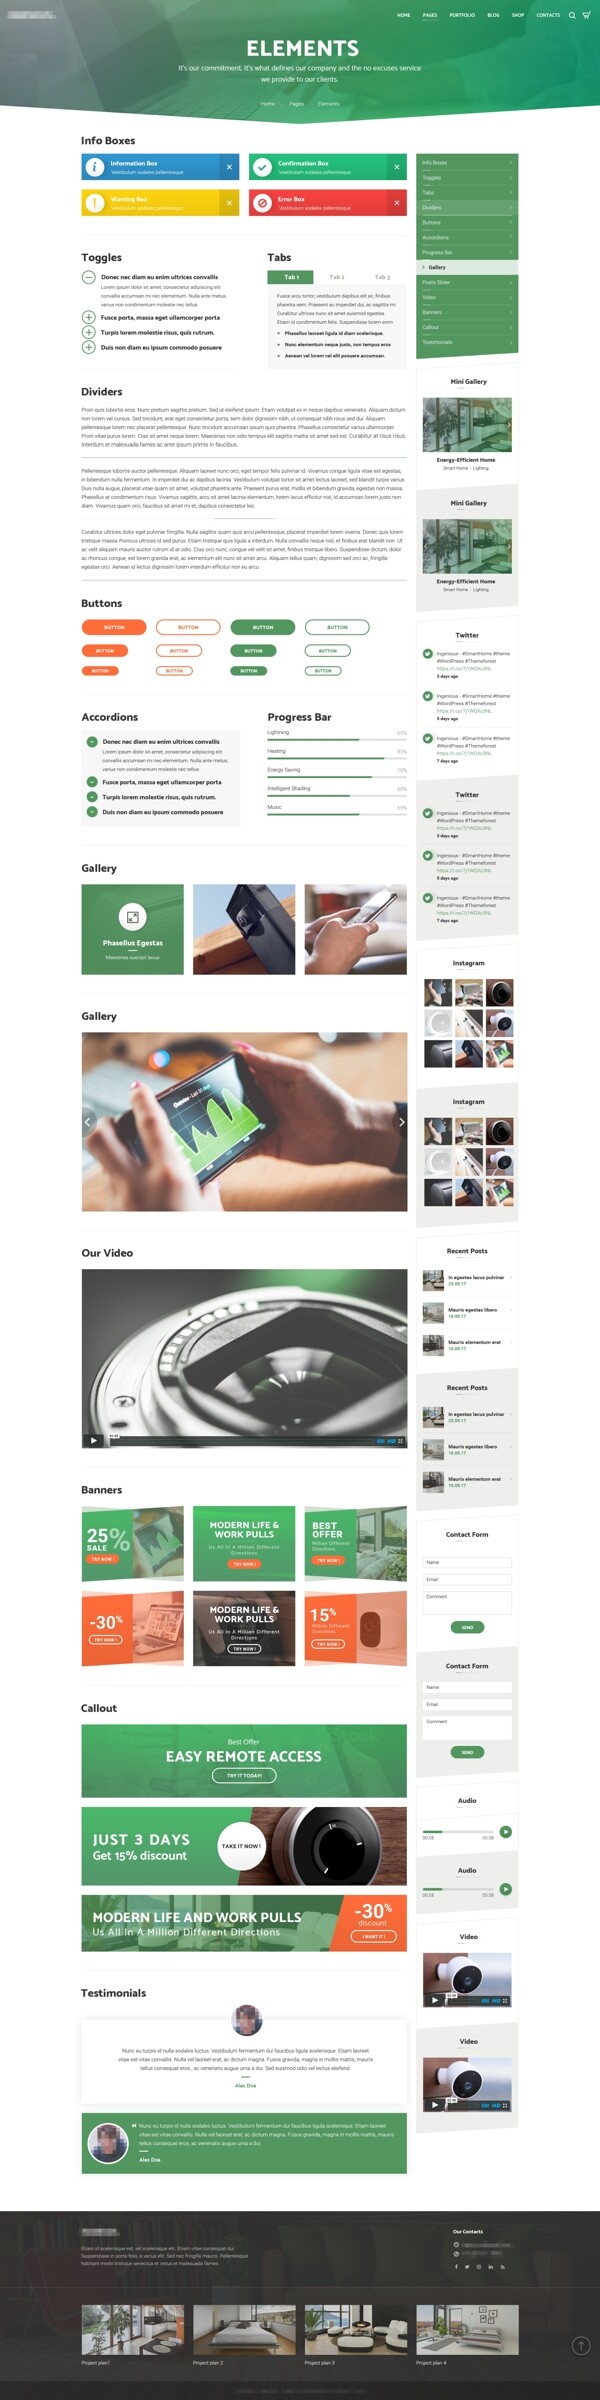 企业摄像头监控设备网站素材设计